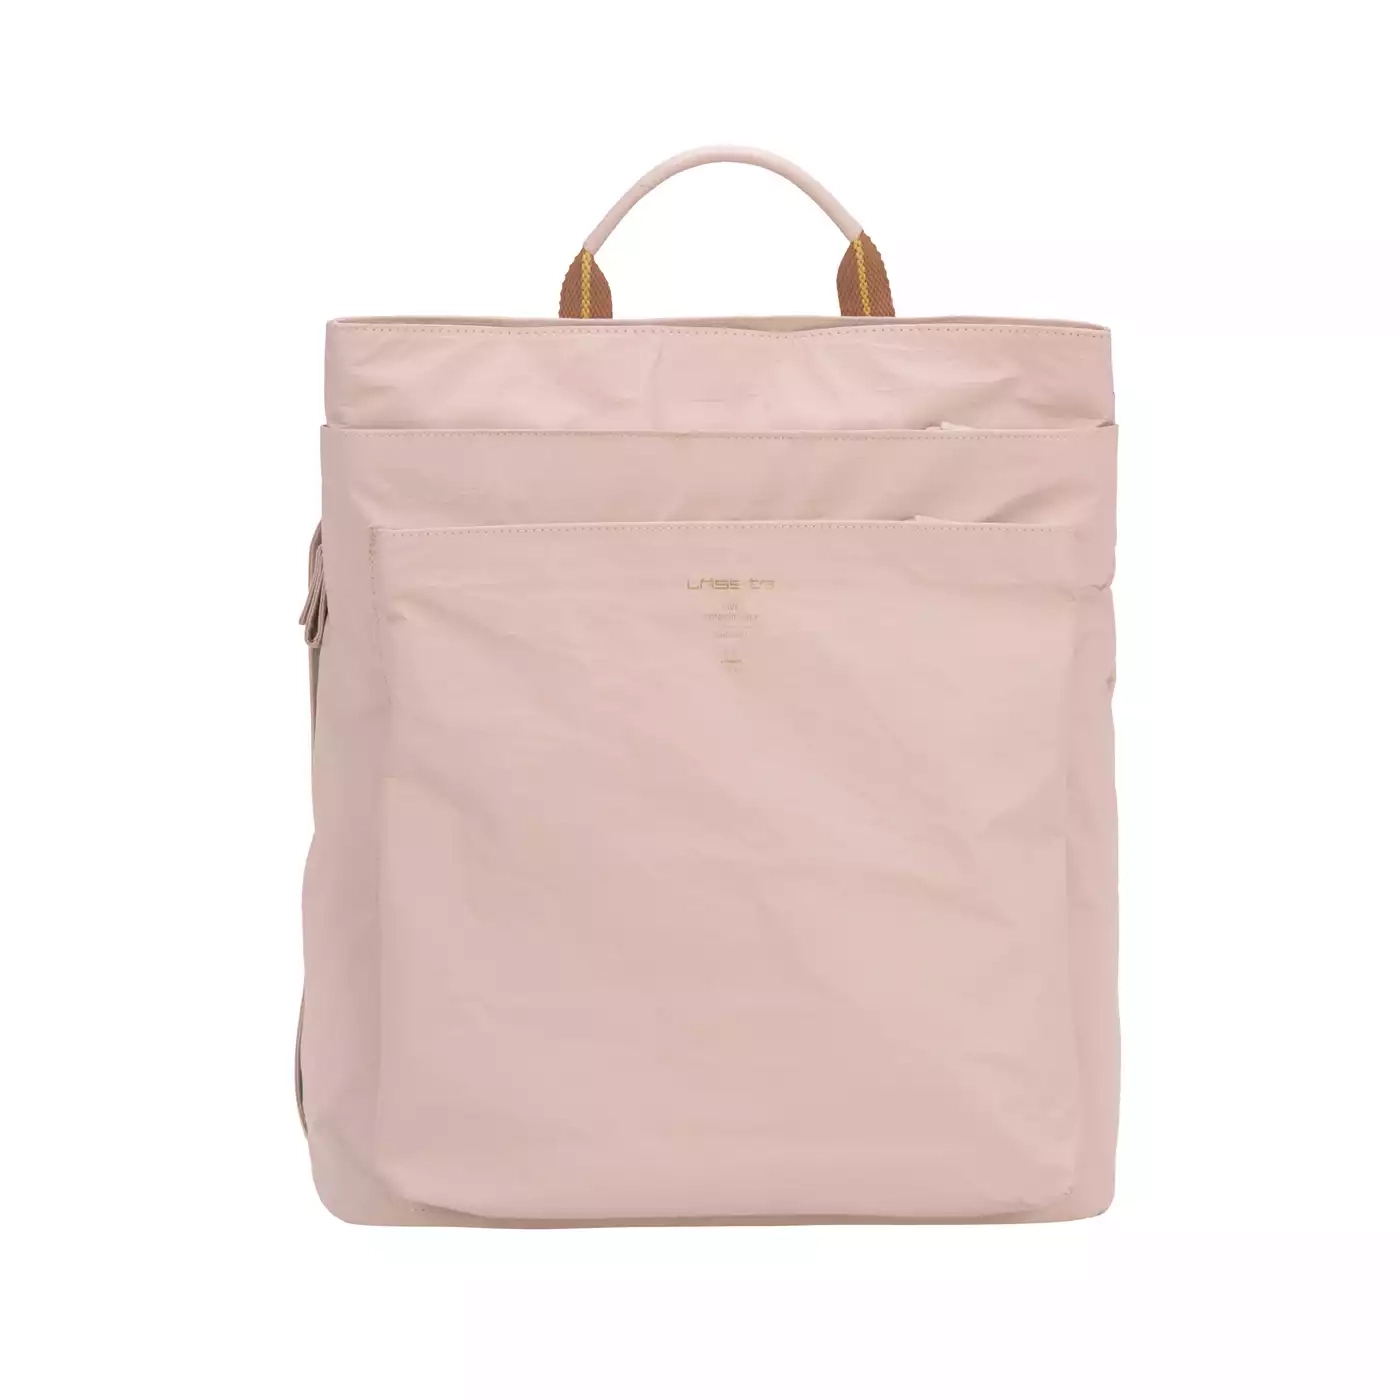 Tyve Backpack Green Label LÄSSIG Rosa Pink 2000577818907 1